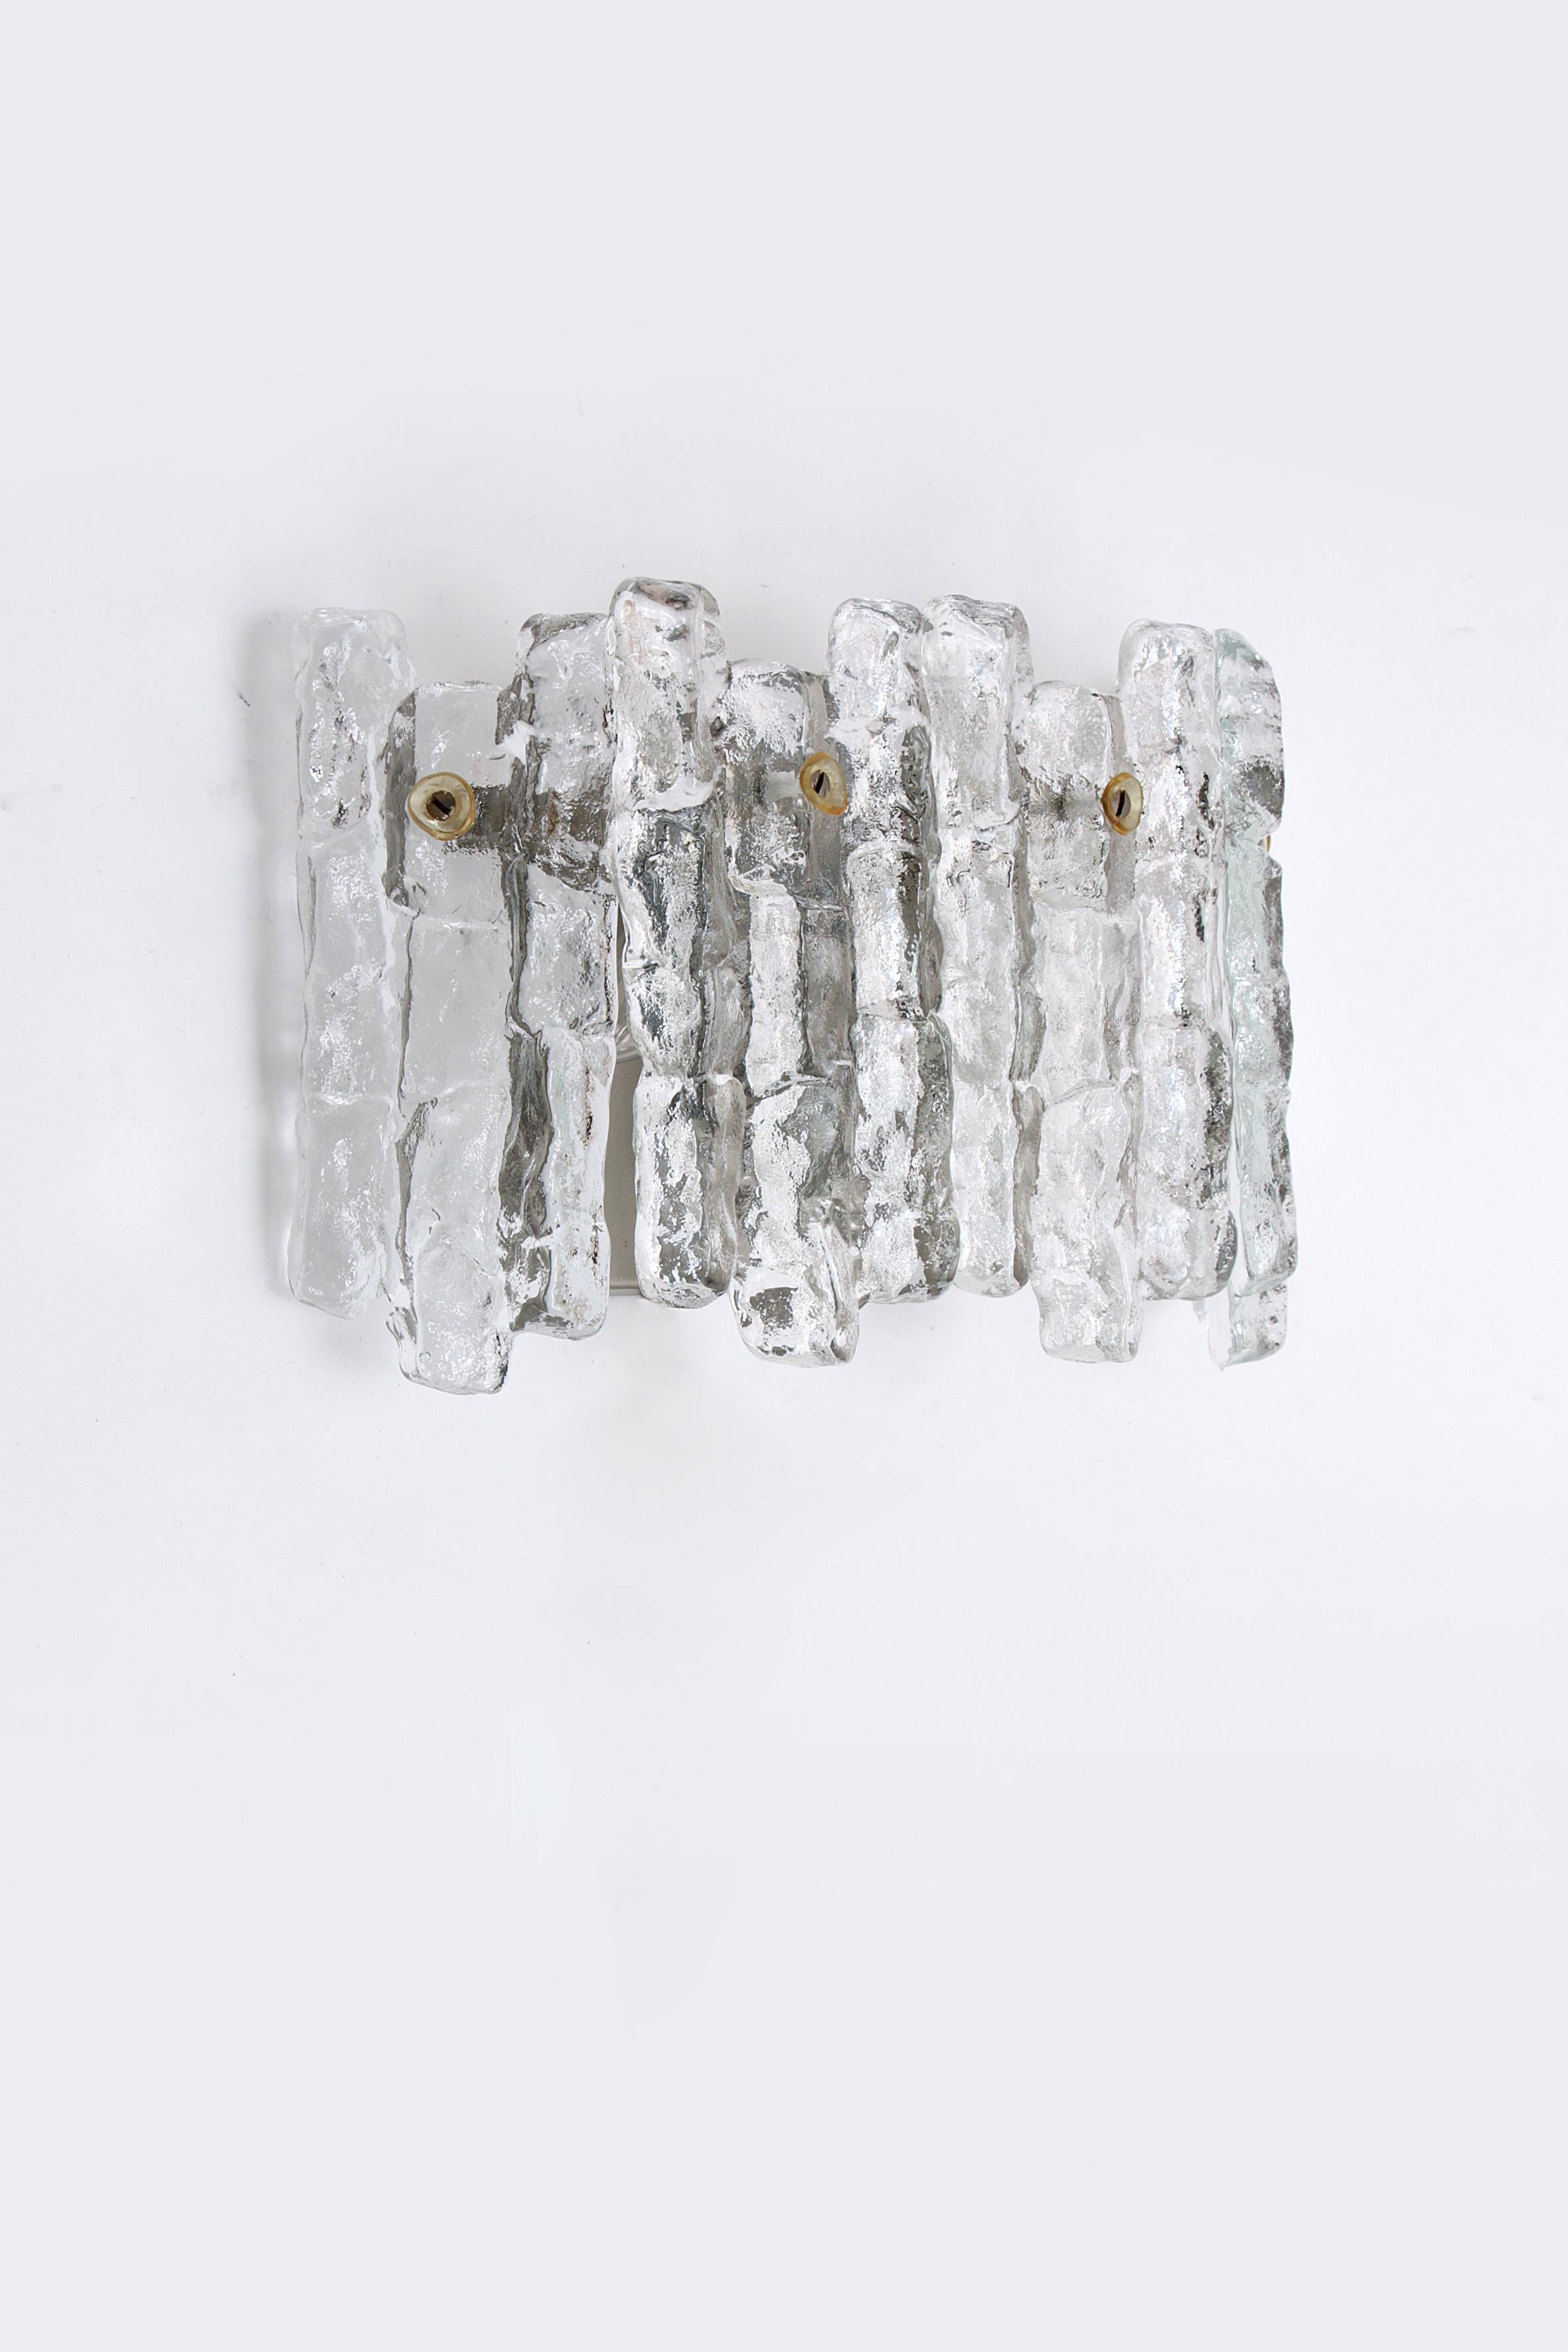 Vintage-Wandleuchte aus Kristall-Eisglas im Vintage-Design von J. T. Kalmar, Österreich 1960


Schöne und elegante moderne Wandleuchte aus Metall, hergestellt von J.T. Kalmar Österreich in den 1960er Jahren. 

Wunderschönes Design, das auf sehr